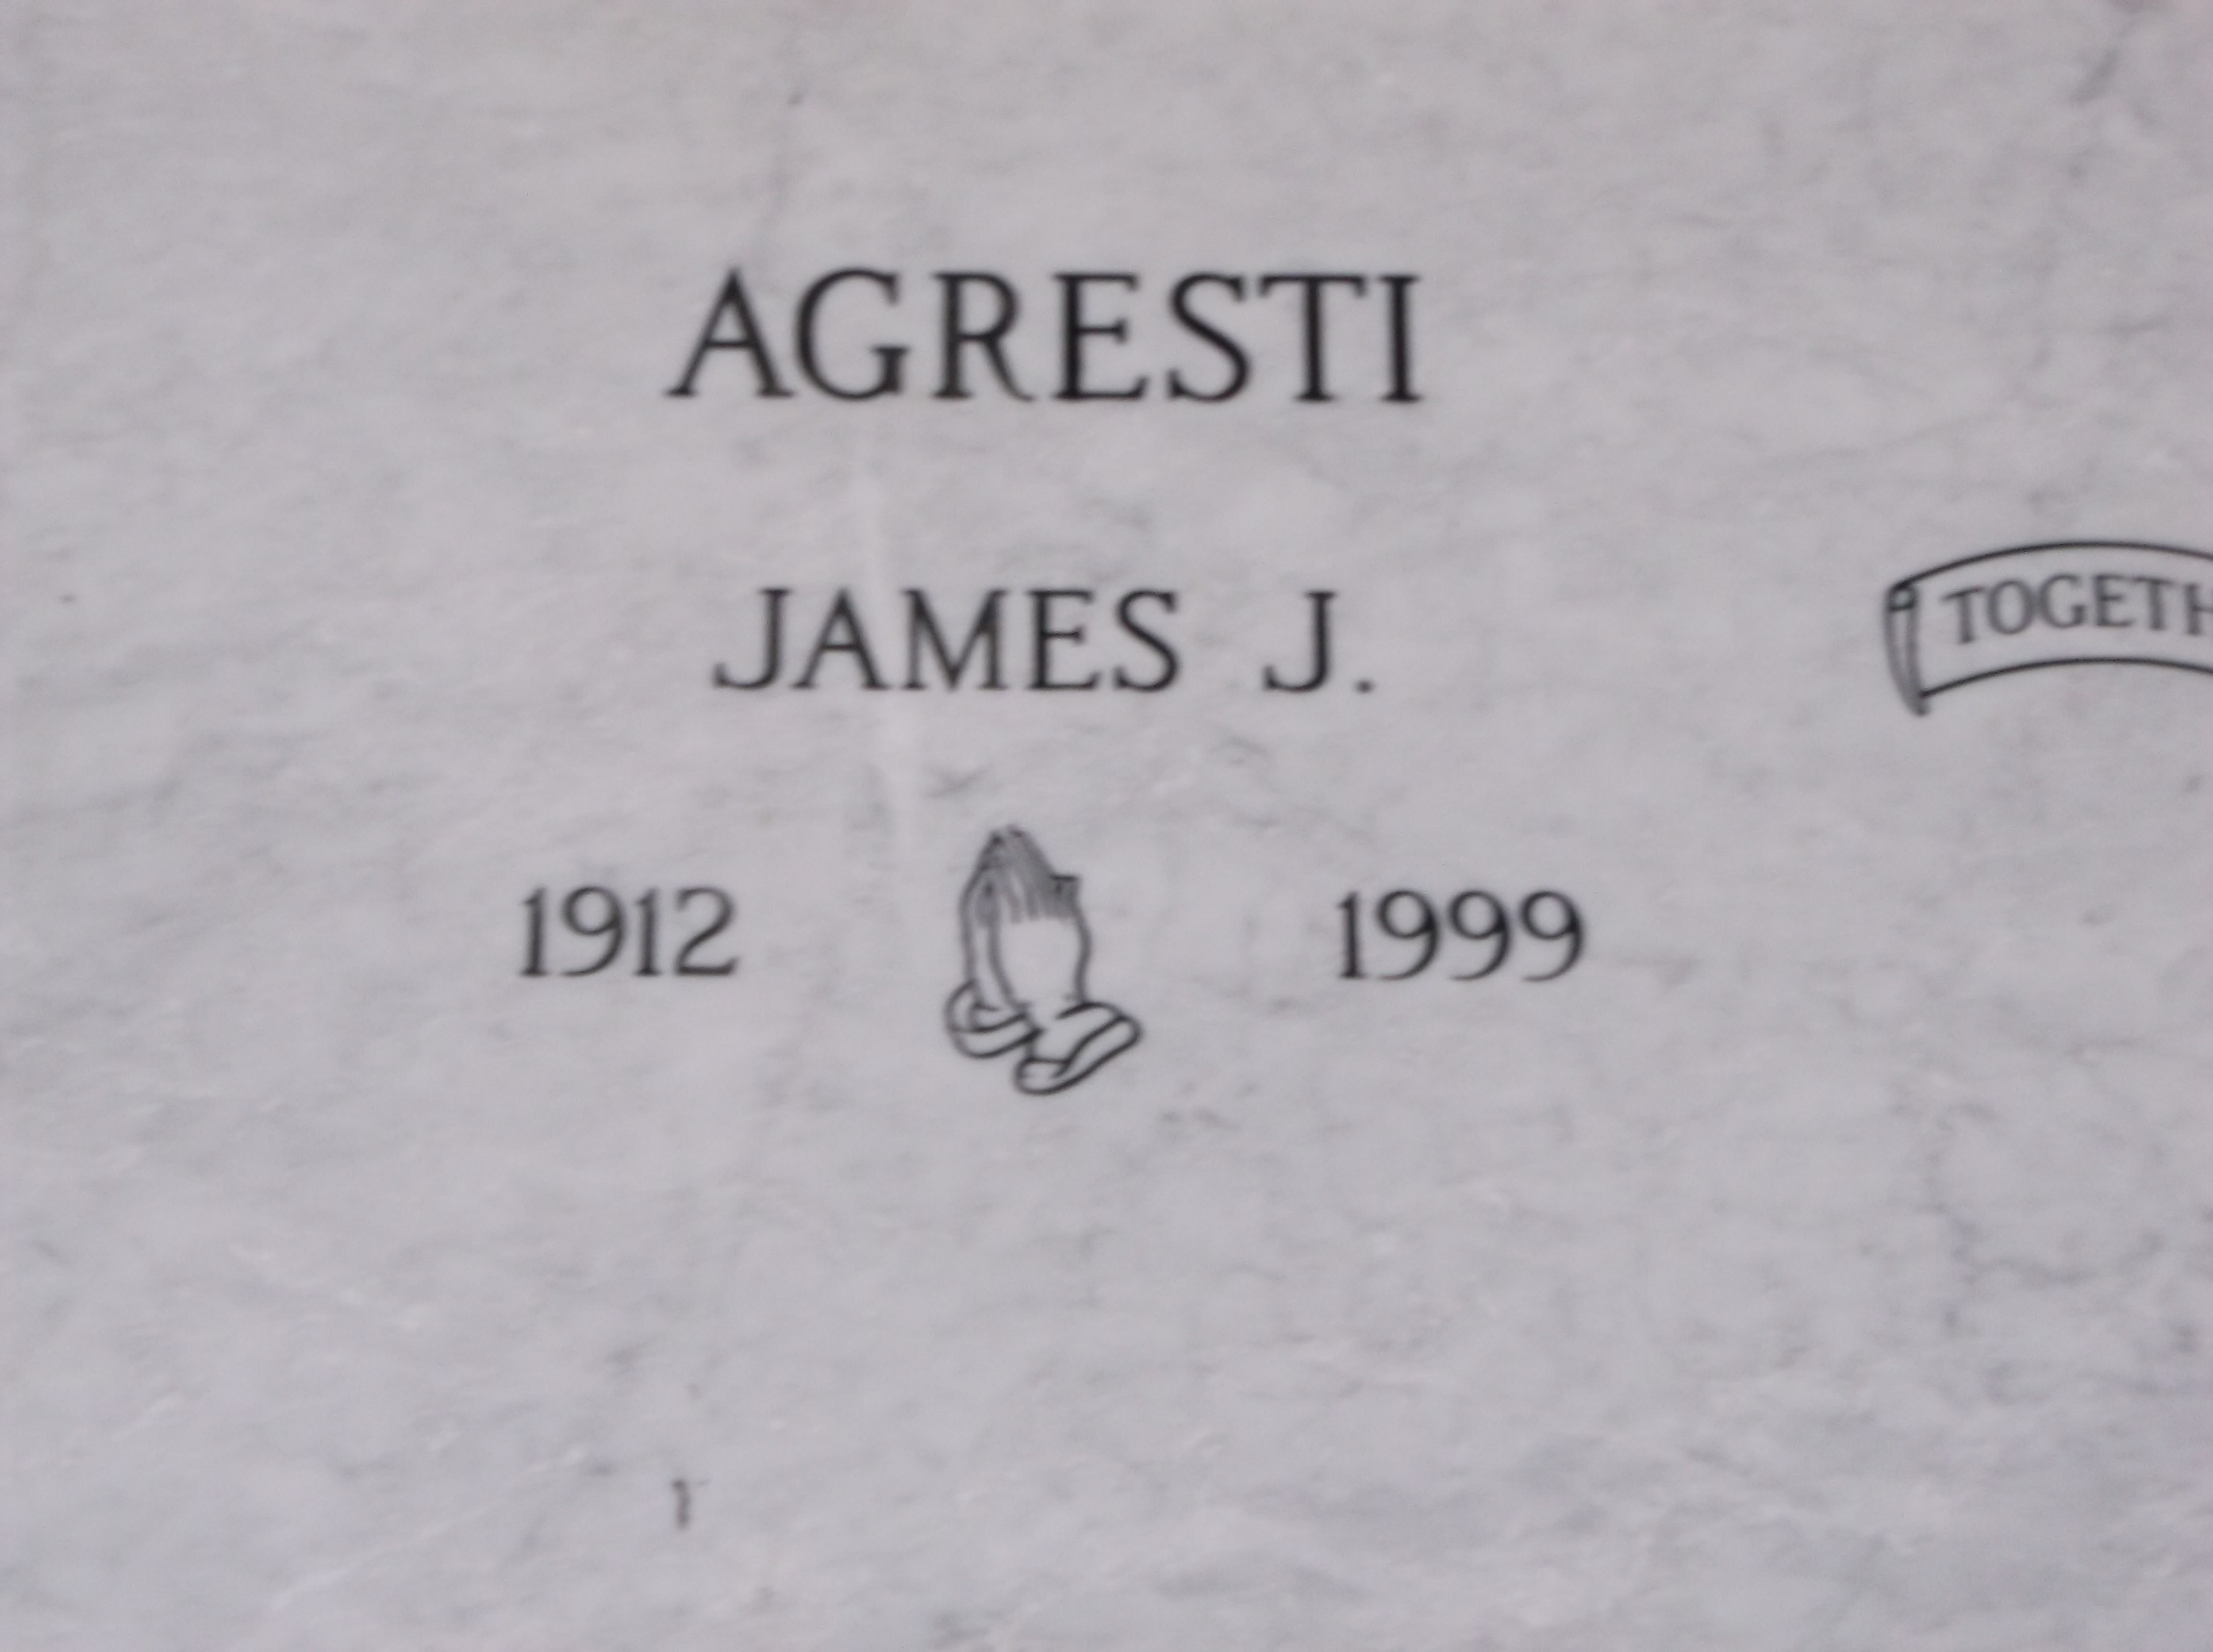 James J Agresti